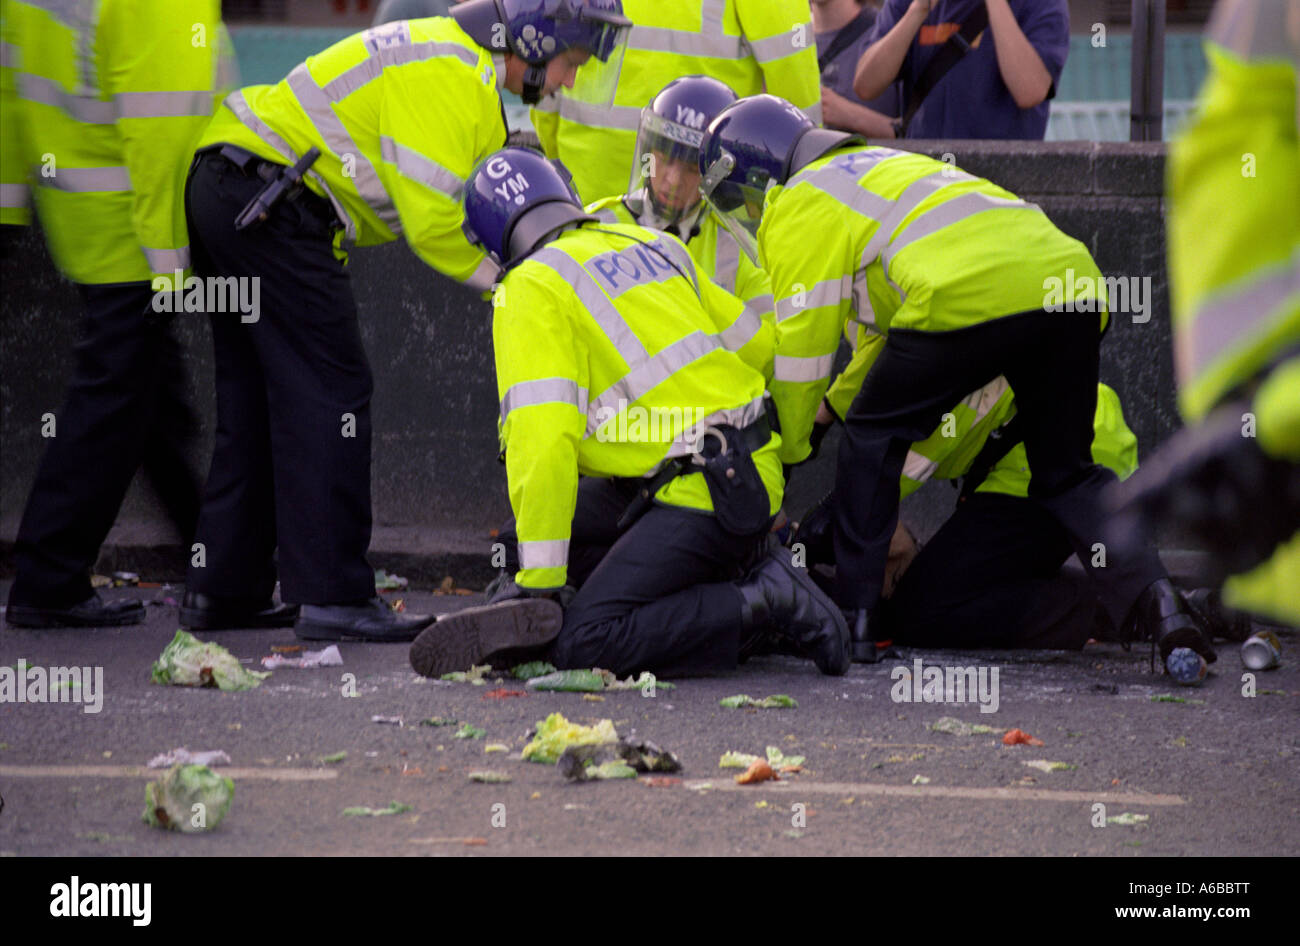 La polizia a recuperare la protesta di strada in occasione del vertice G8 di Birmingham nel 1998 con persone che protestano e di essere arrestato Foto Stock